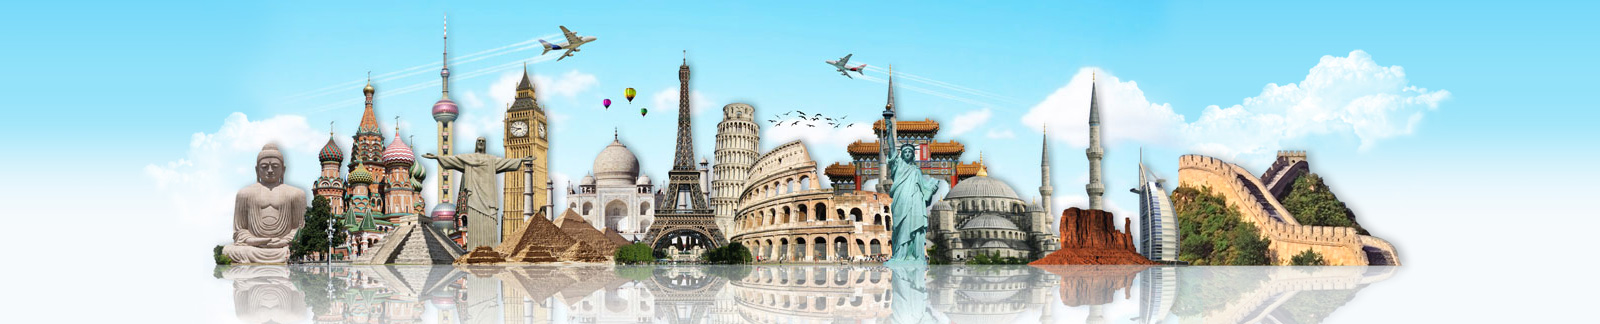 联谊假期集团: 中国、欧洲、亚洲、邮轮旅游